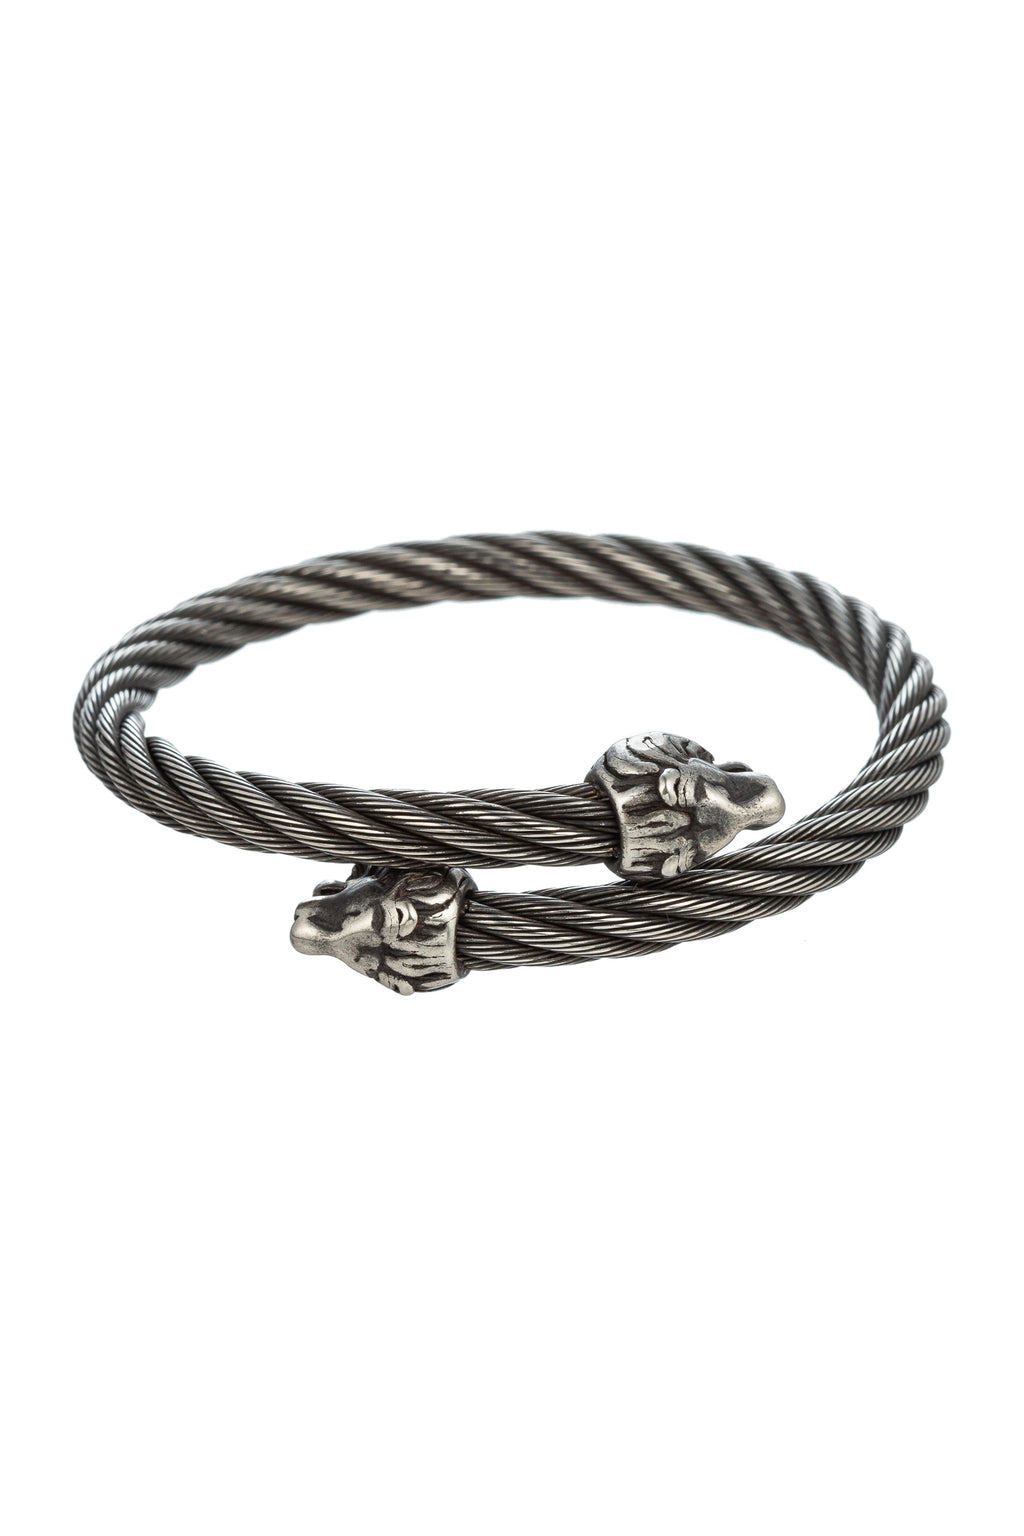 Silver tone titanium cuff bracelet with lion head pendant ends.